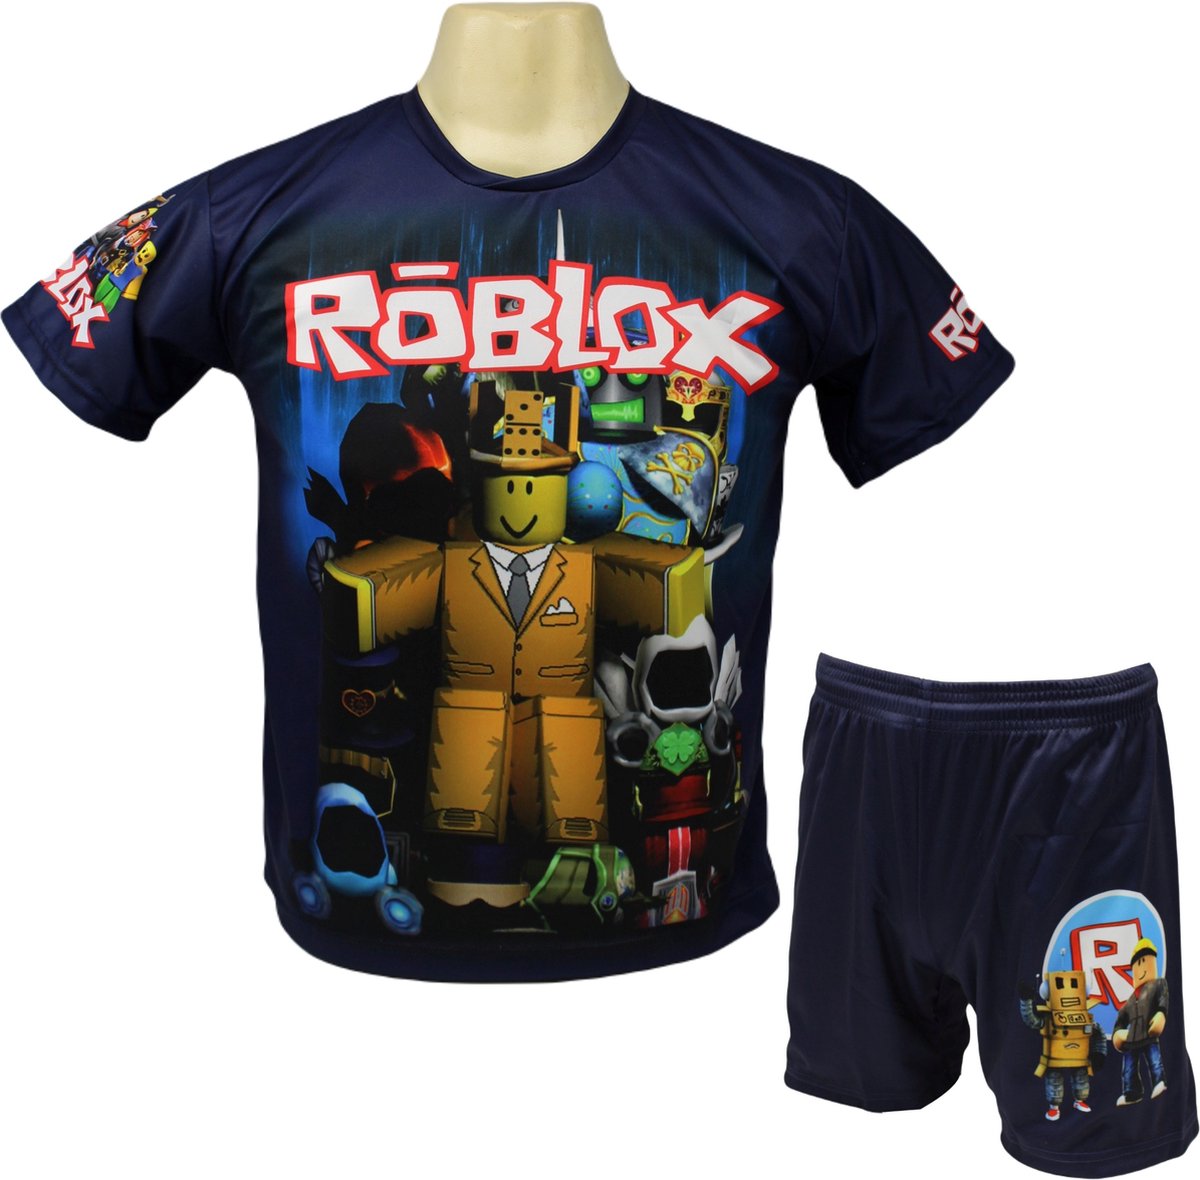 Roblox Shirt en Broekje - Roblox Kleding Tenue - Kinder tot Volwassen maten - Maat 116